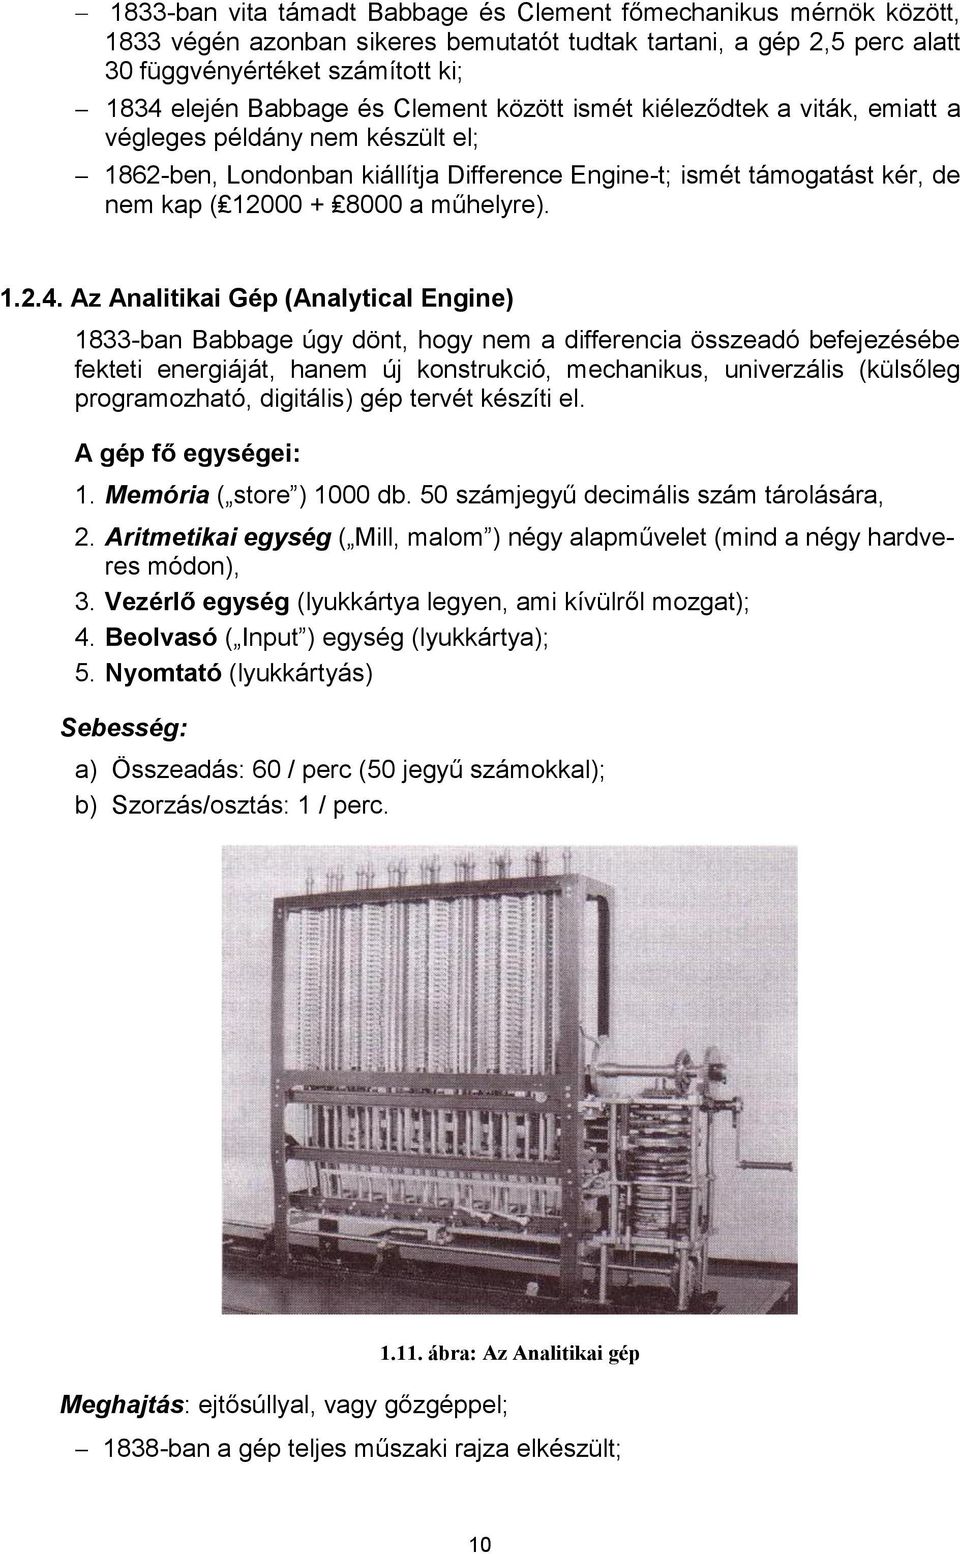 Az Analitikai Gép (Analytical Engine) 1833-ban Babbage úgy dönt, hogy nem a differencia összeadó befejezésébe fekteti energiáját, hanem új konstrukció, mechanikus, univerzális (külsőleg